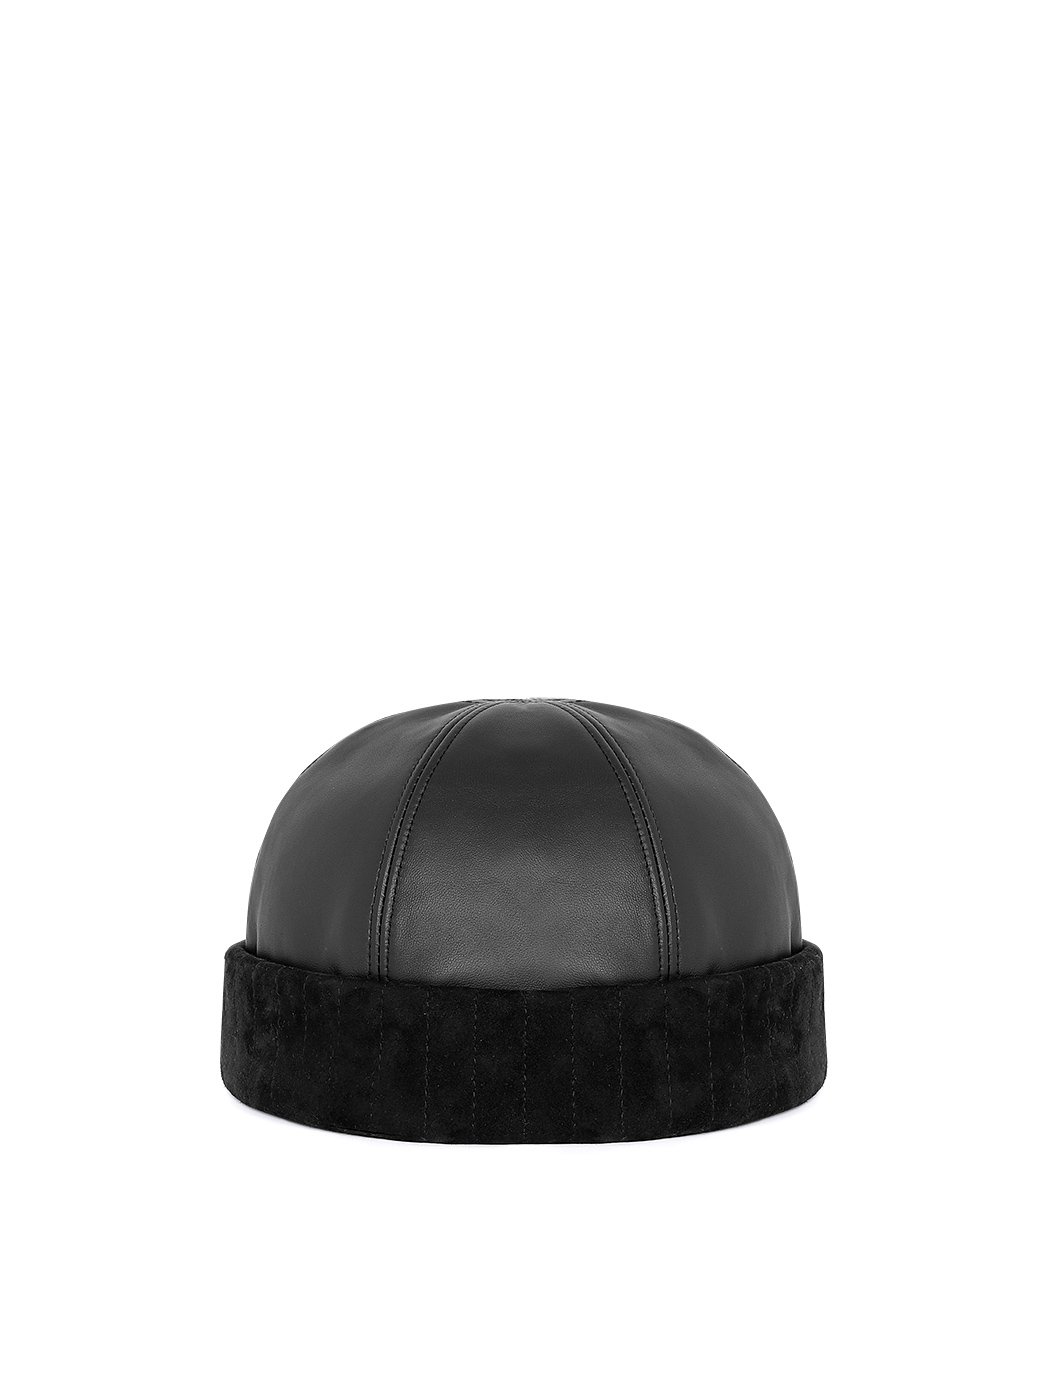 블랙 도커 모자